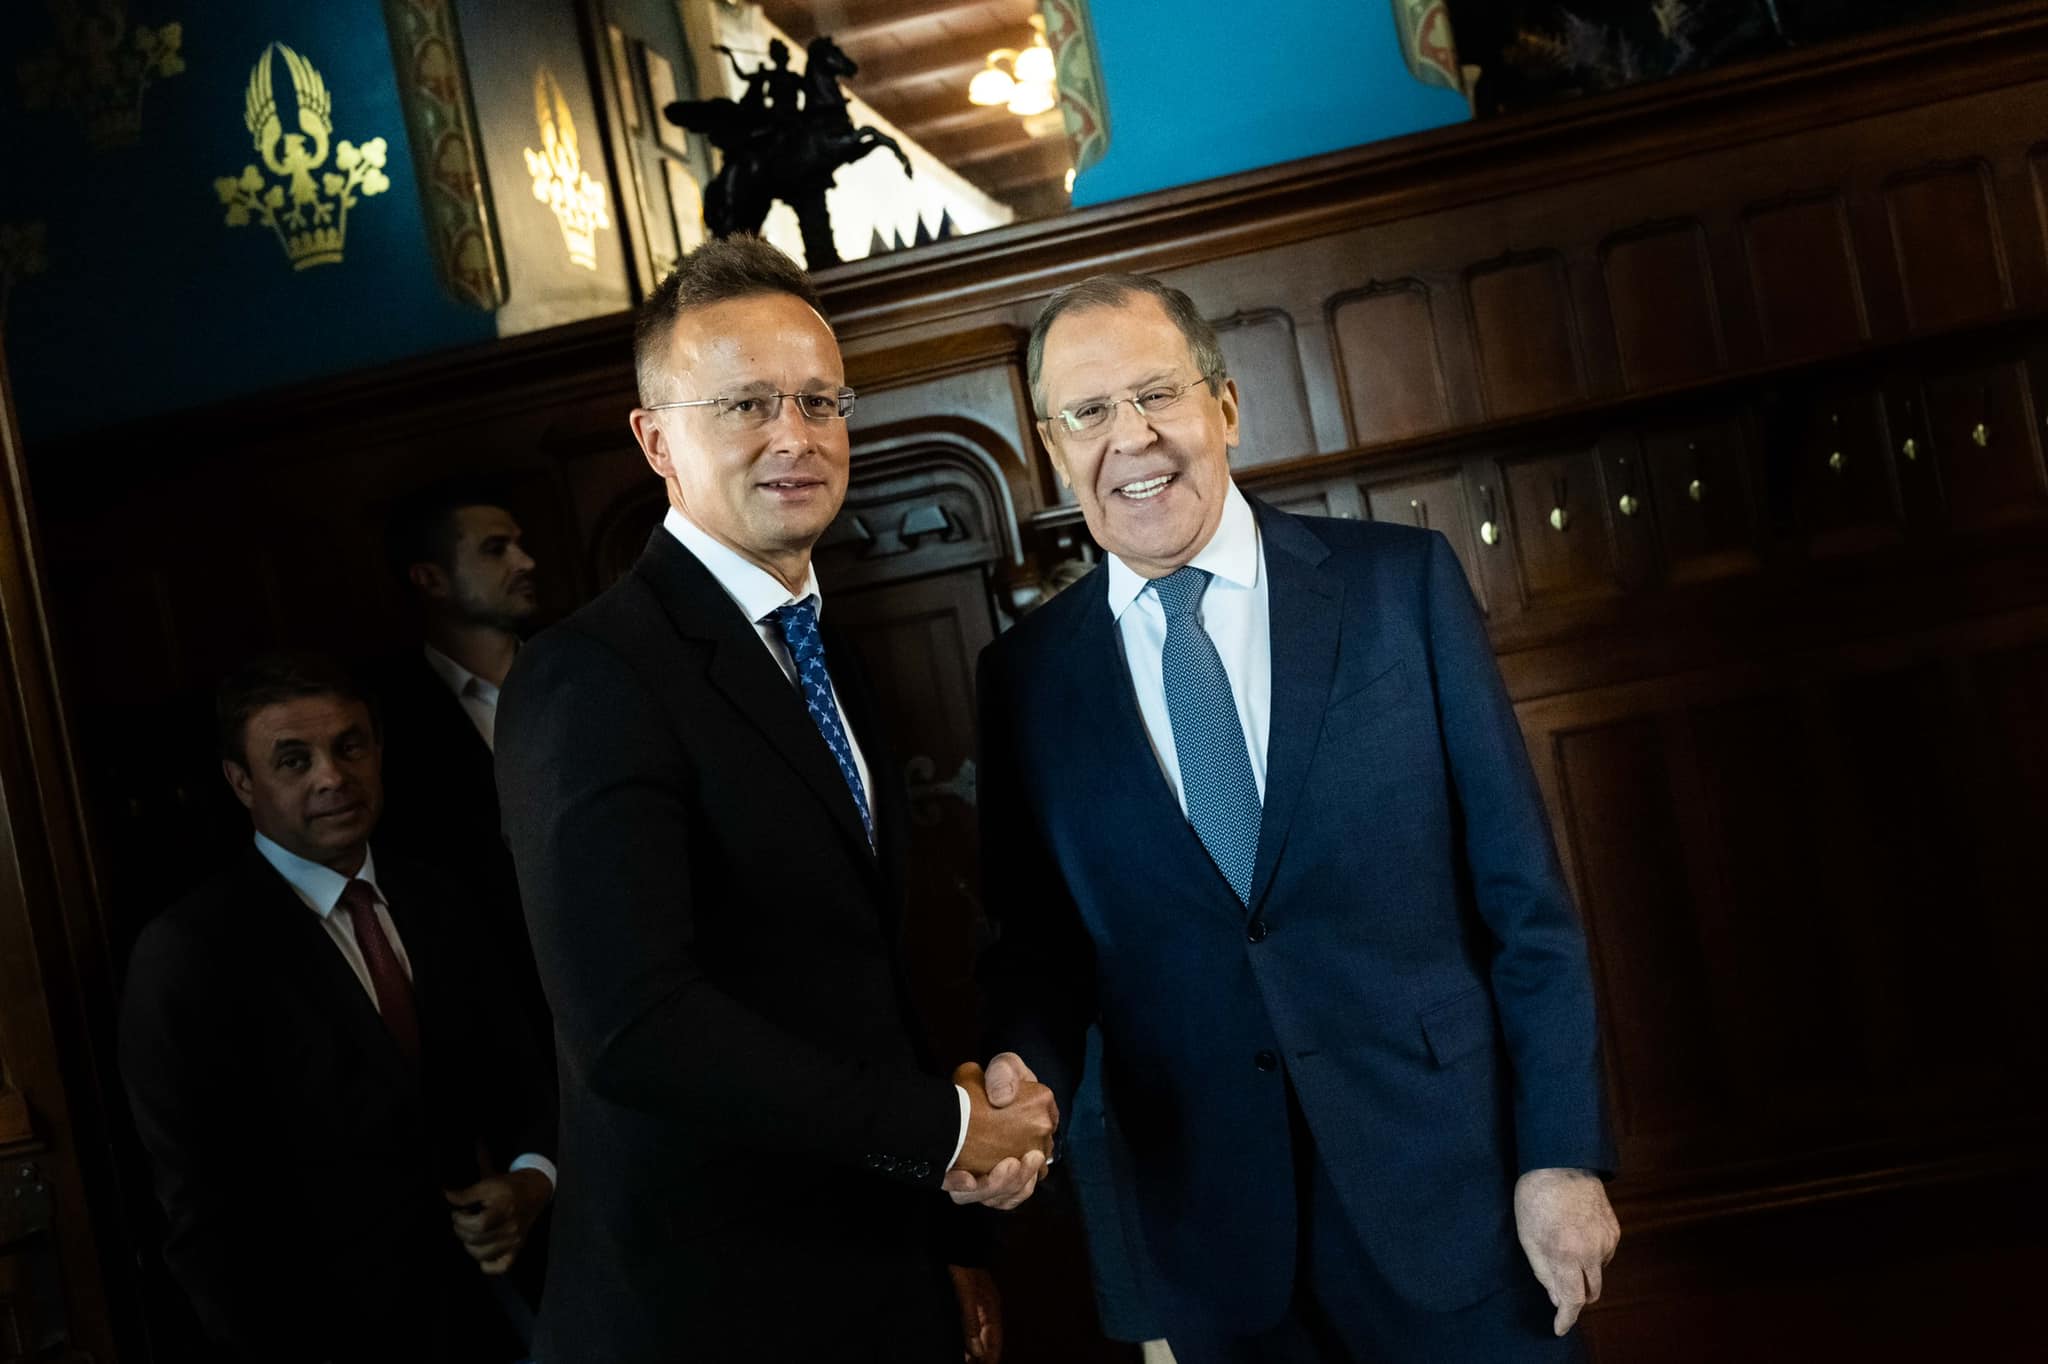 Außenminister reist zu Gesprächen über Energielieferungen und Frieden nach Moskau